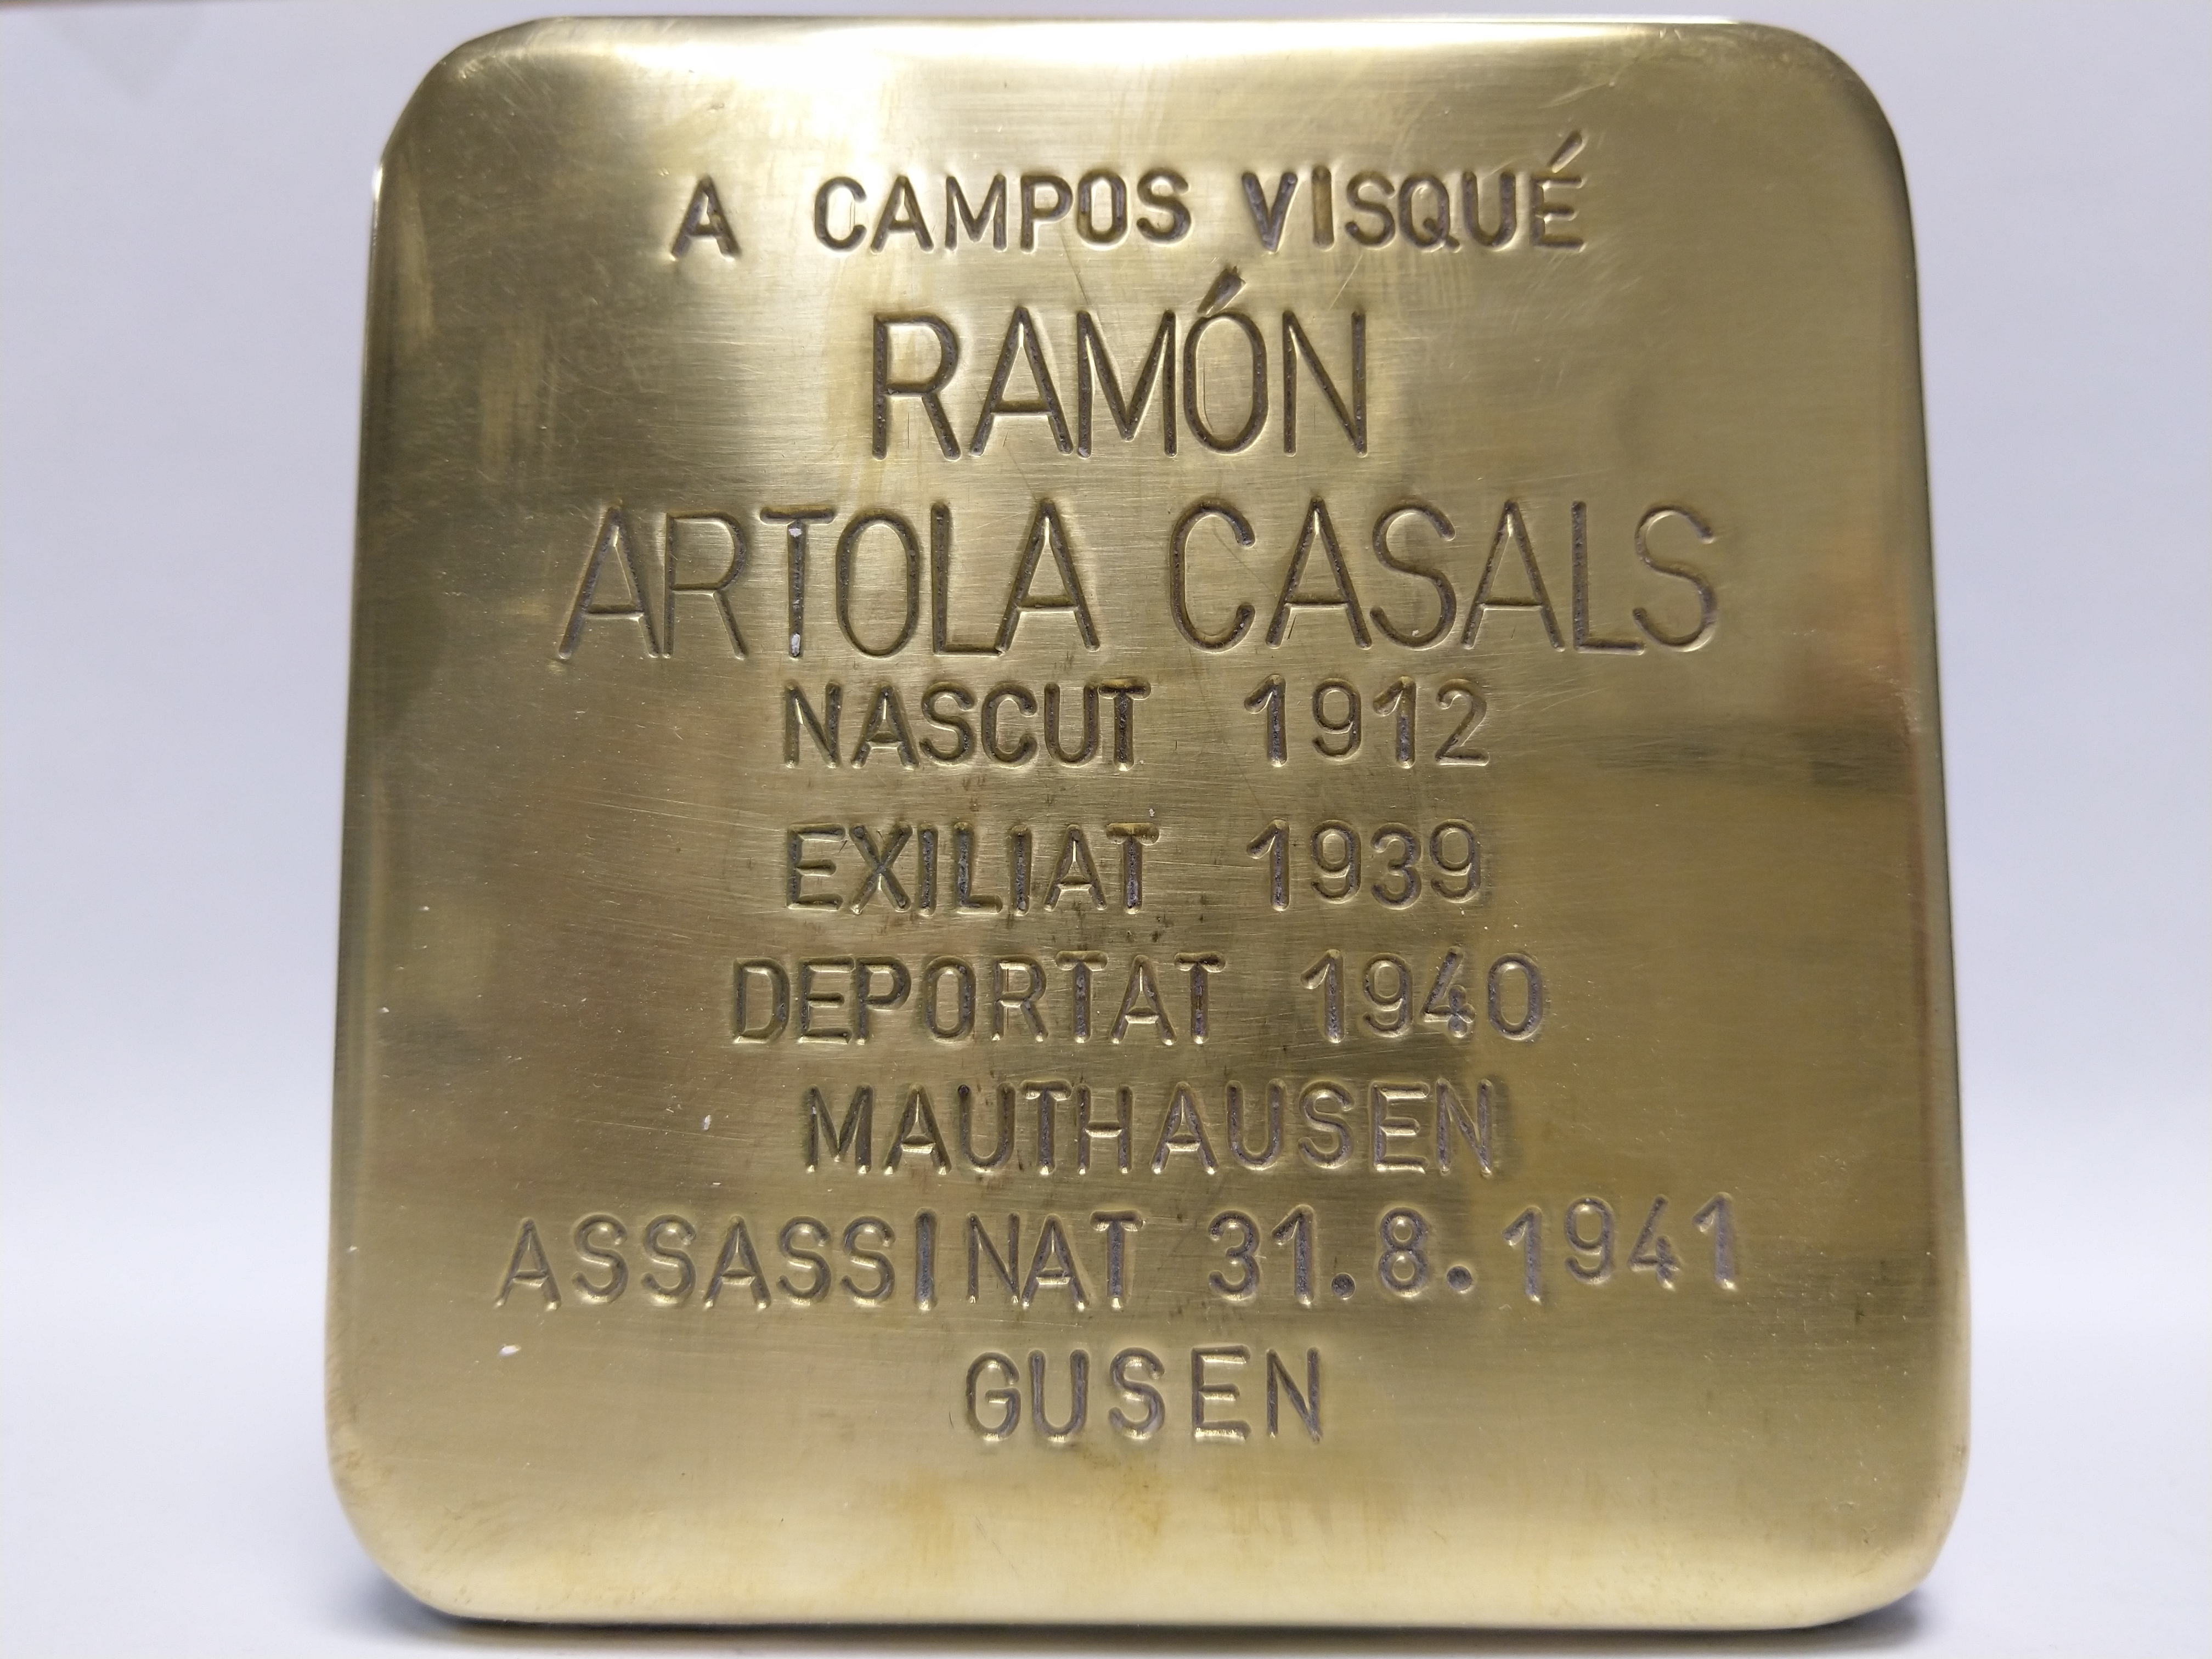 Artola Casals, Ramón